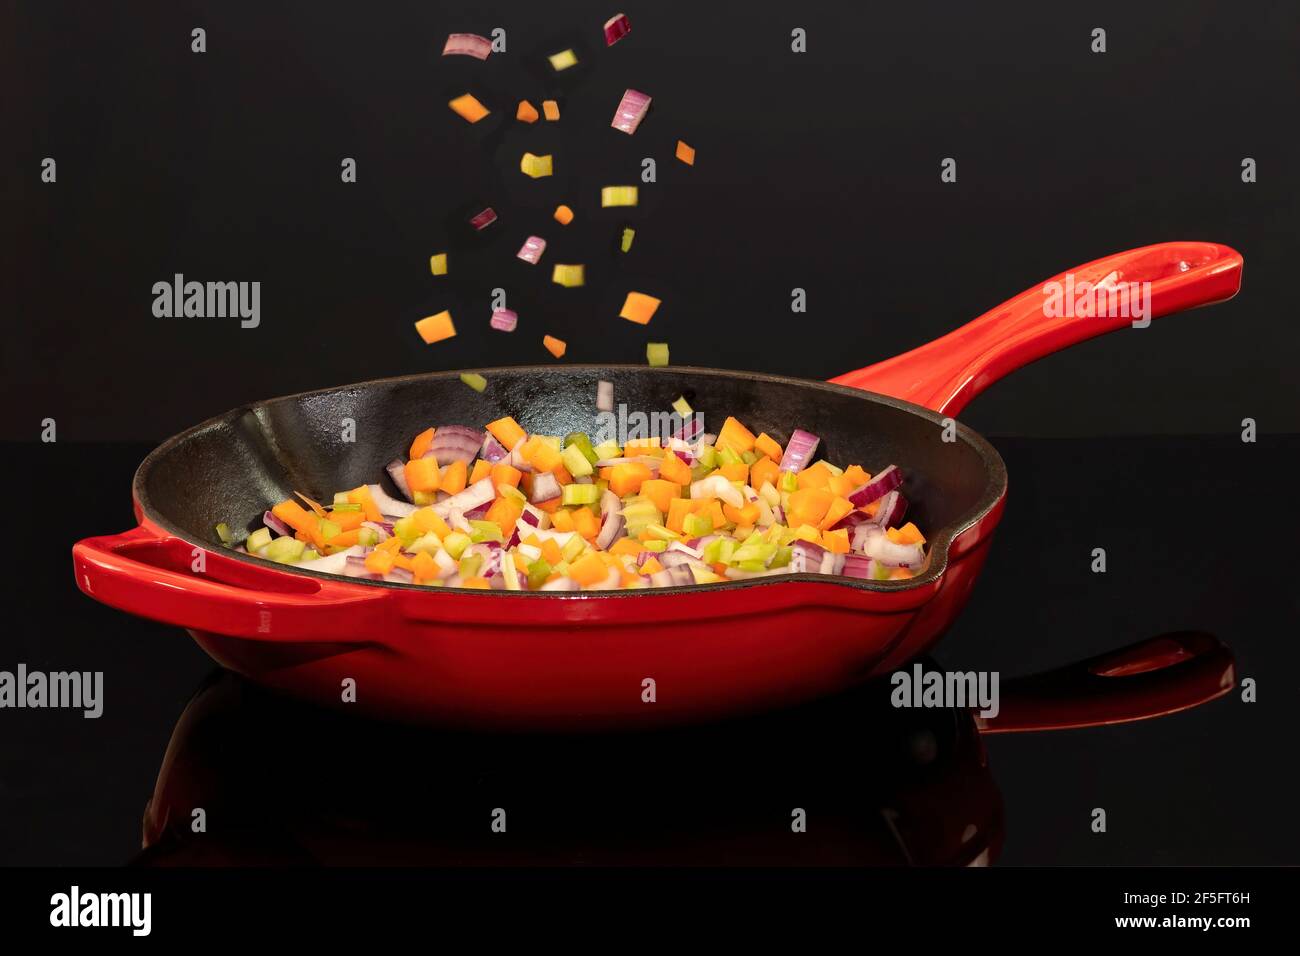 Italienische Soffritto, Karotten, Sellerie und Zwiebel, gehen in die Pfanne  Stockfotografie - Alamy